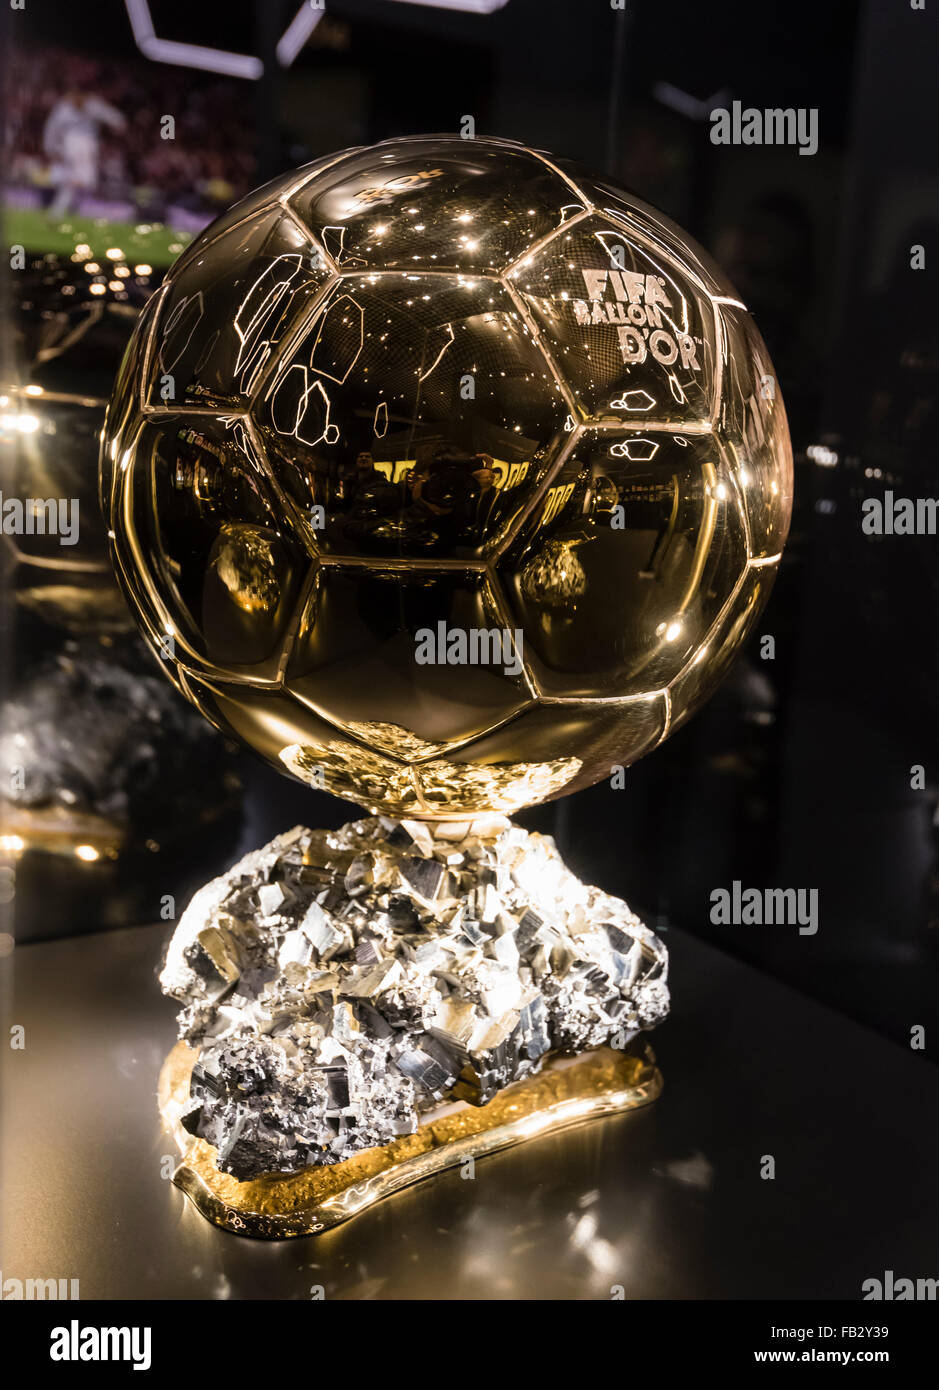 La FIFA ballon d'o trofeo è esposto presso il futuro museo della FIFA a Zurigo, pochi giorni prima del 2015 Cerimonia di premiazione. Foto Stock